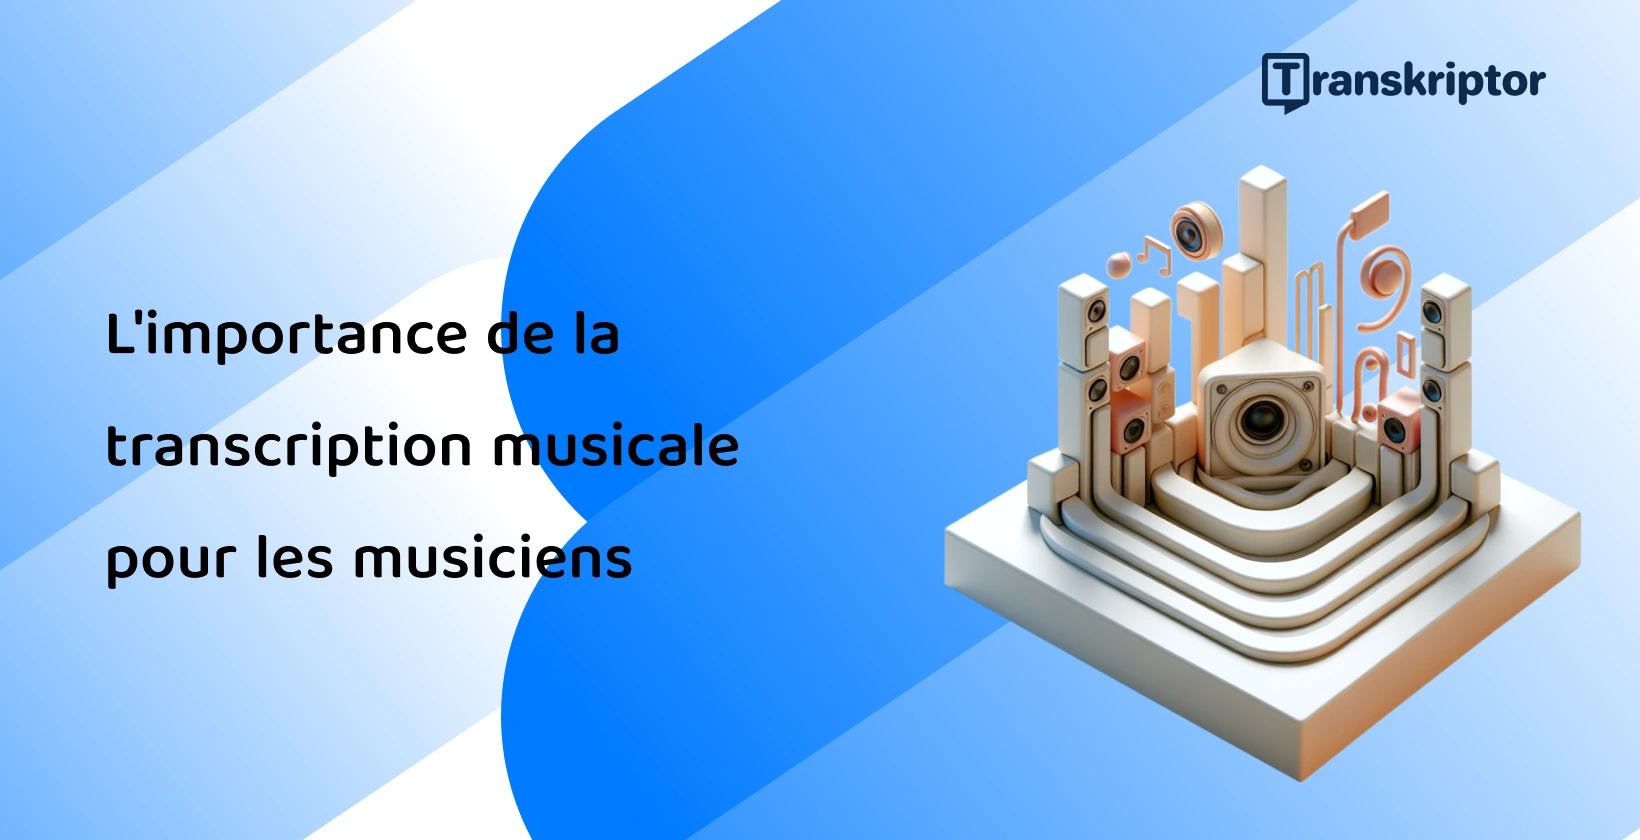 Configuration abstraite avec des notes de musique et des éléments de haut-parleur décrivant le rôle crucial de la transcription musicale pour les musiciens.